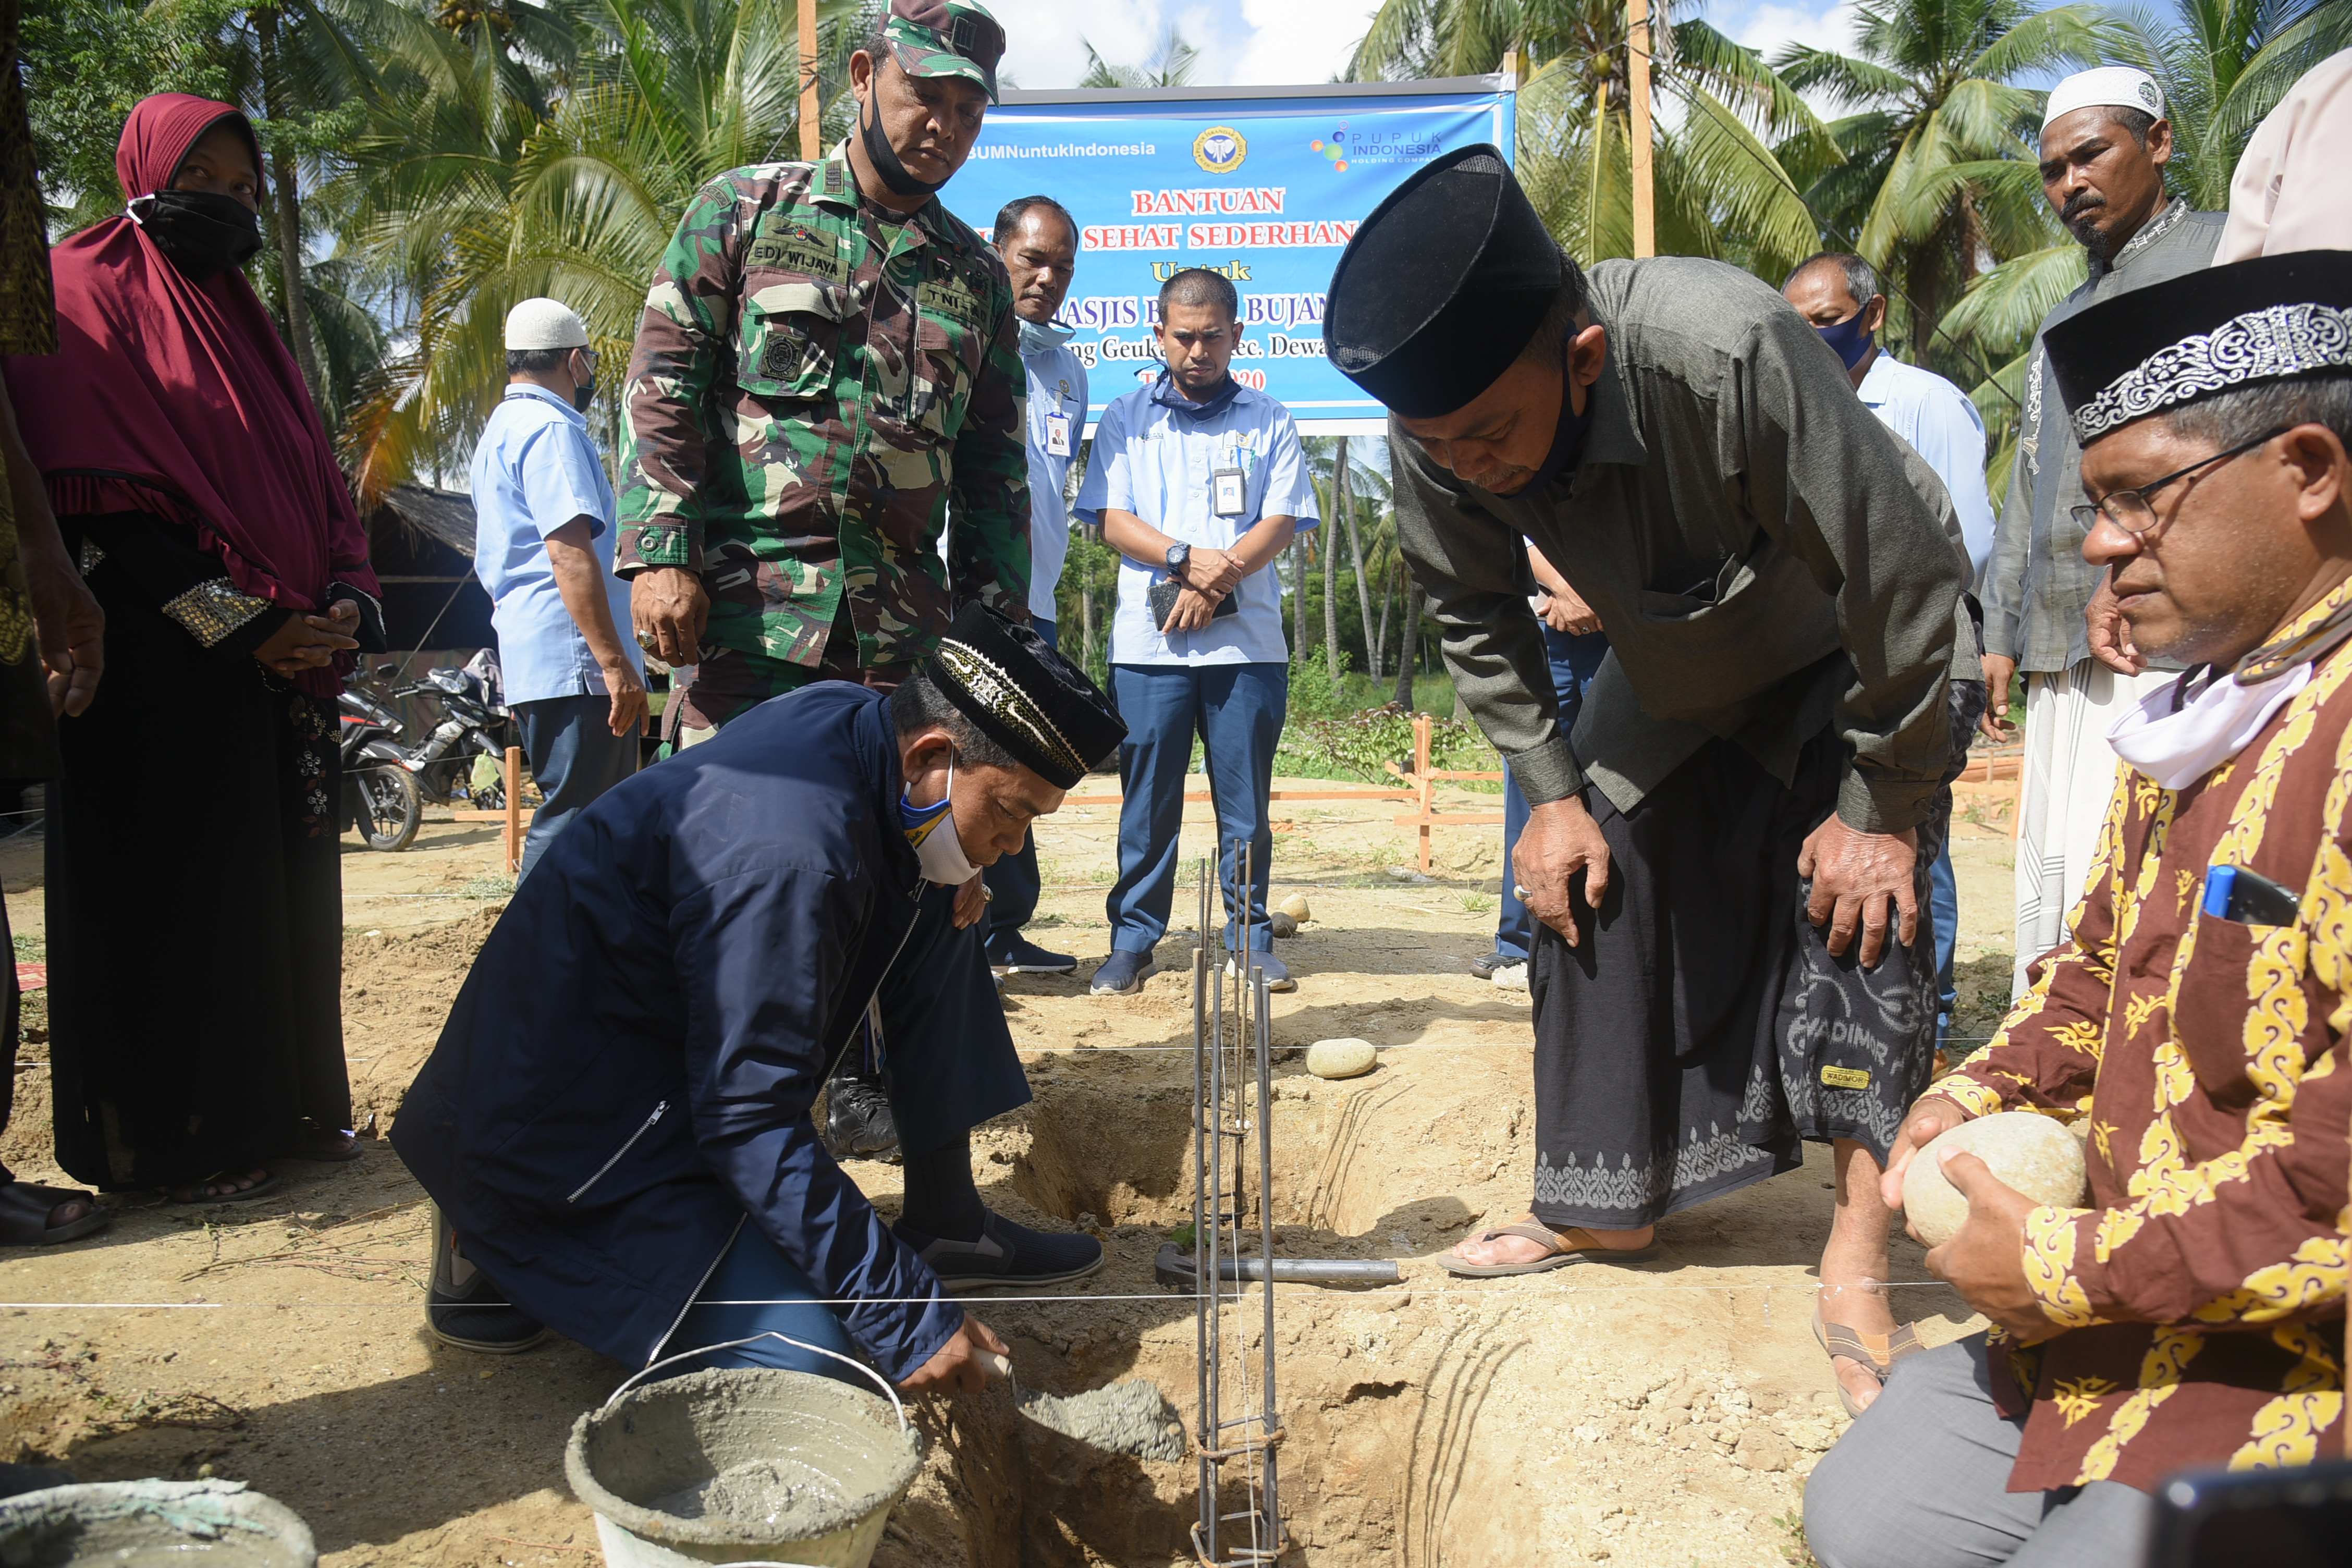 PIM Bantu Rumah Sehat Sederhana (RSS) untuk Bilal Masjid Bujang Salim Krueng Geukueh